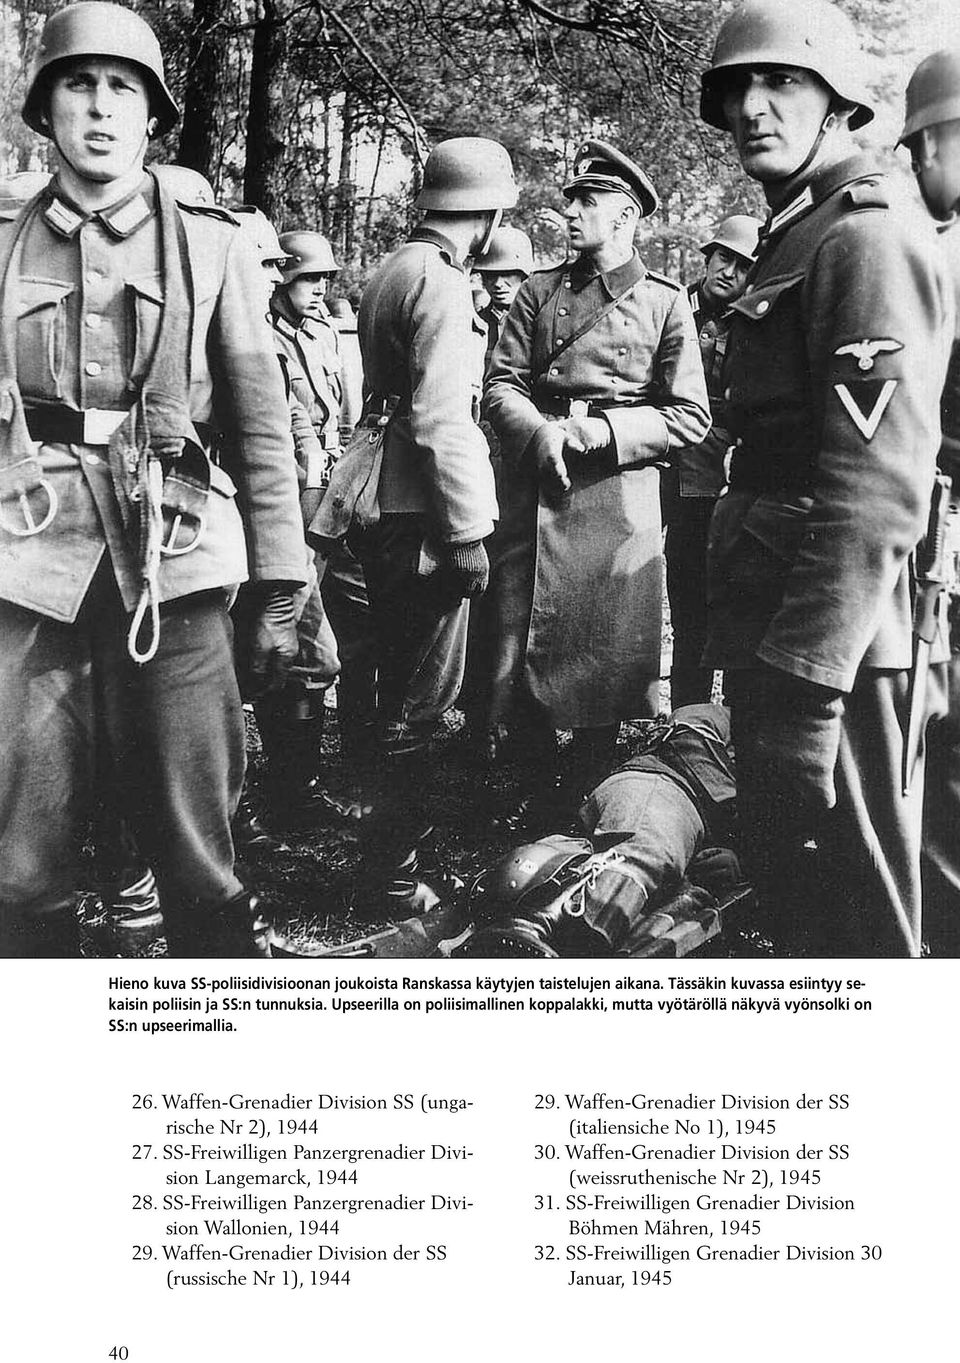 SS-Freiwilligen Panzergrenadier Division Langemarck, 1944 28. SS-Freiwilligen Panzergrenadier Division Wallonien, 1944 29. Waffen-Grenadier Division der SS (russische Nr 1), 1944 29.